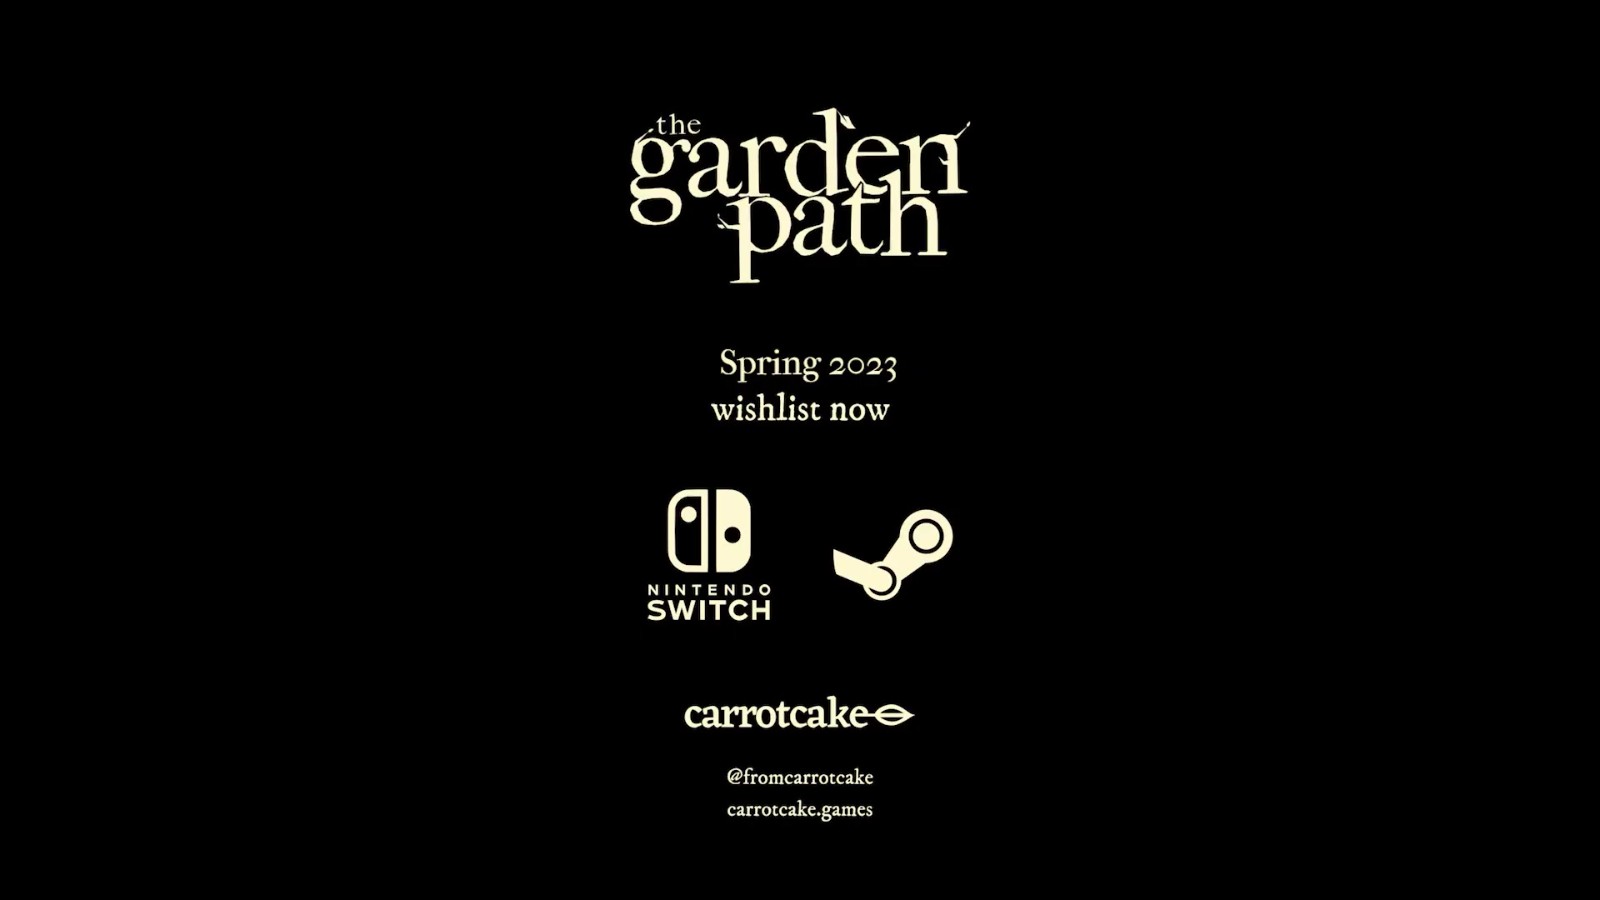 生活模拟游戏《花园小径》将于2023年春季推出